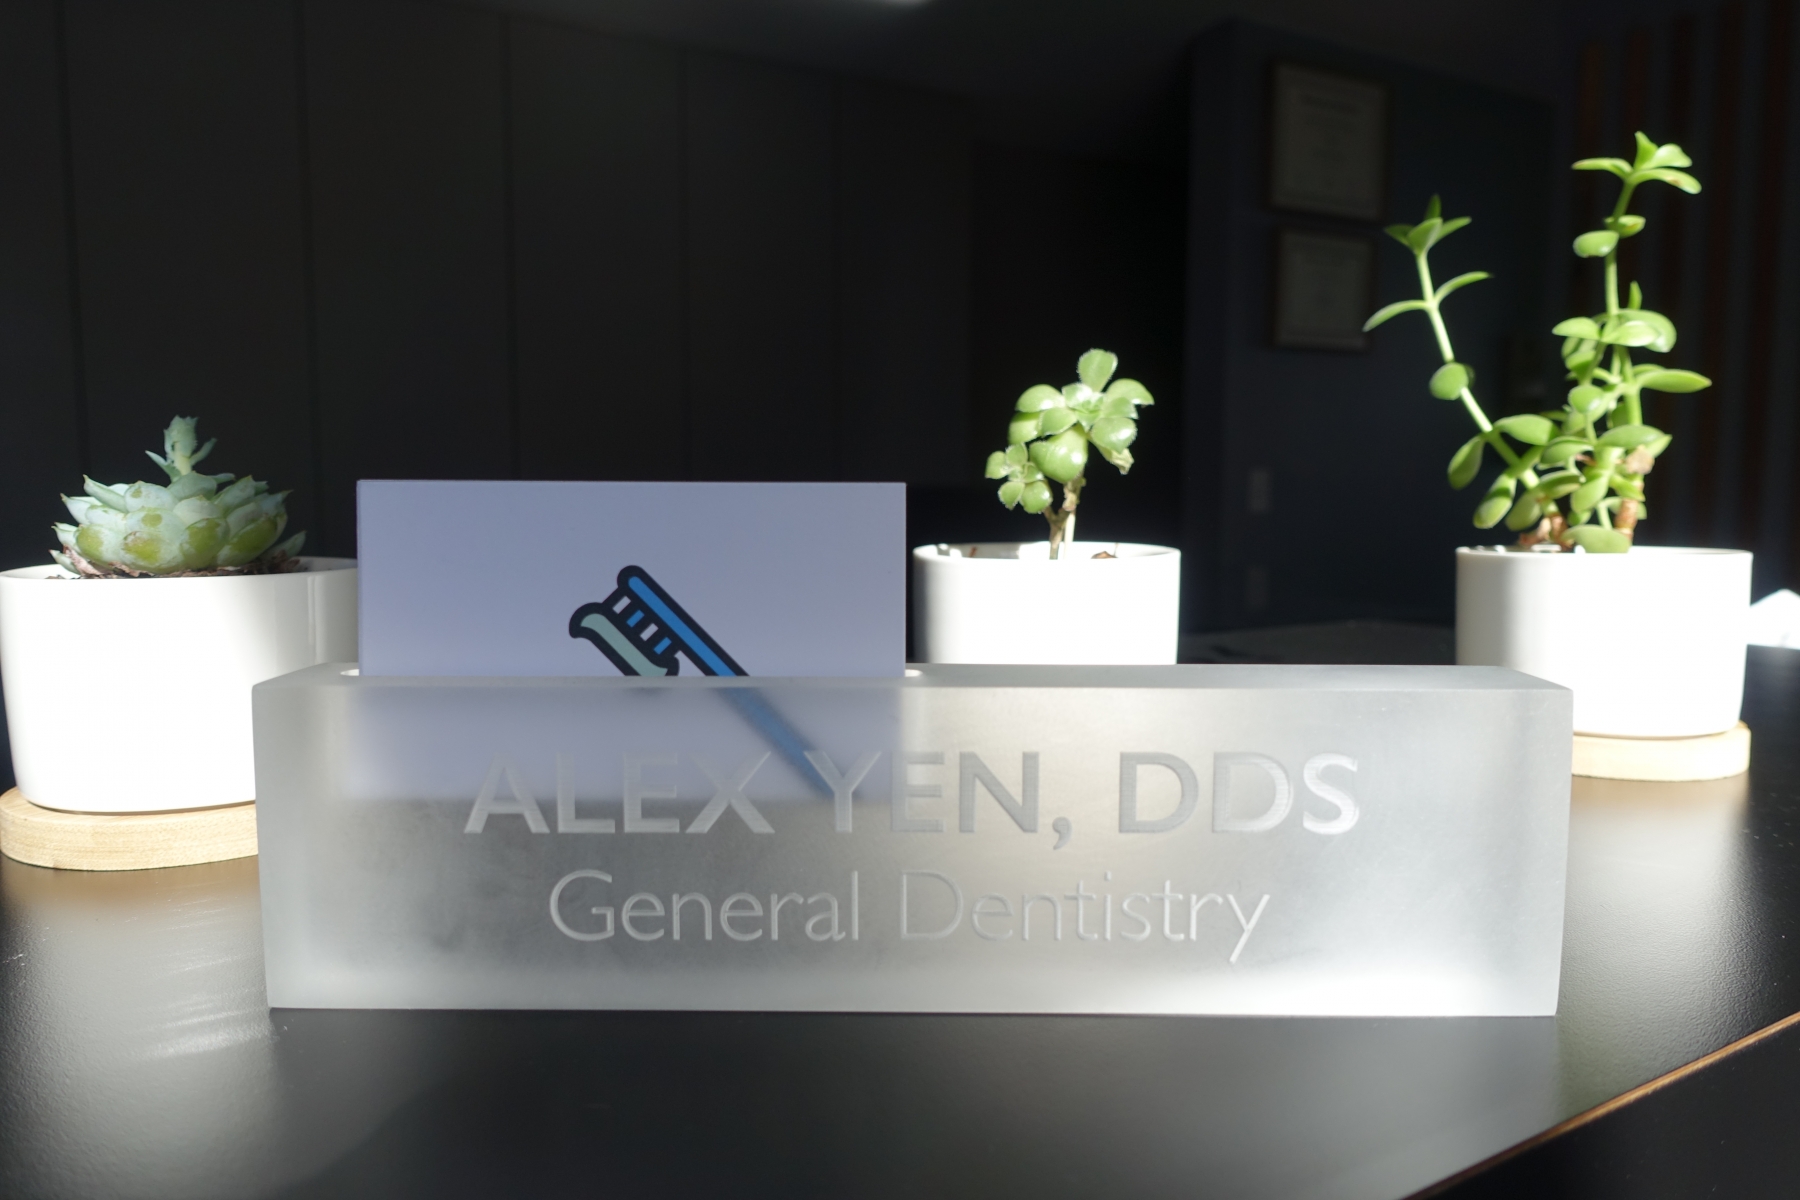 Alex-Yen-DDS-Desk-Palo-Alto